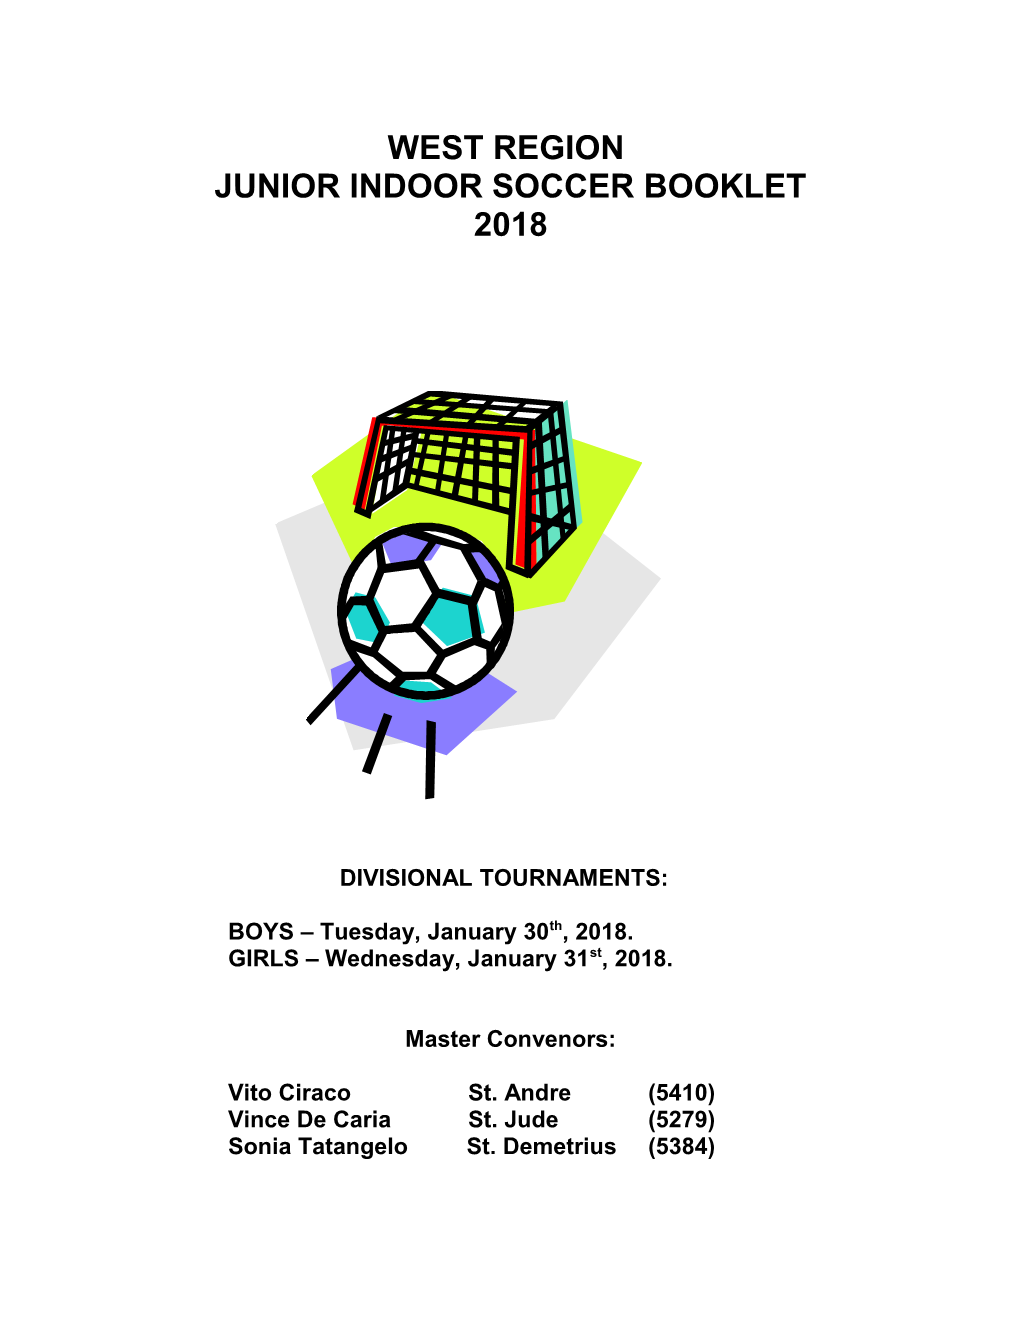 Junior Indoor Soccer Booklet